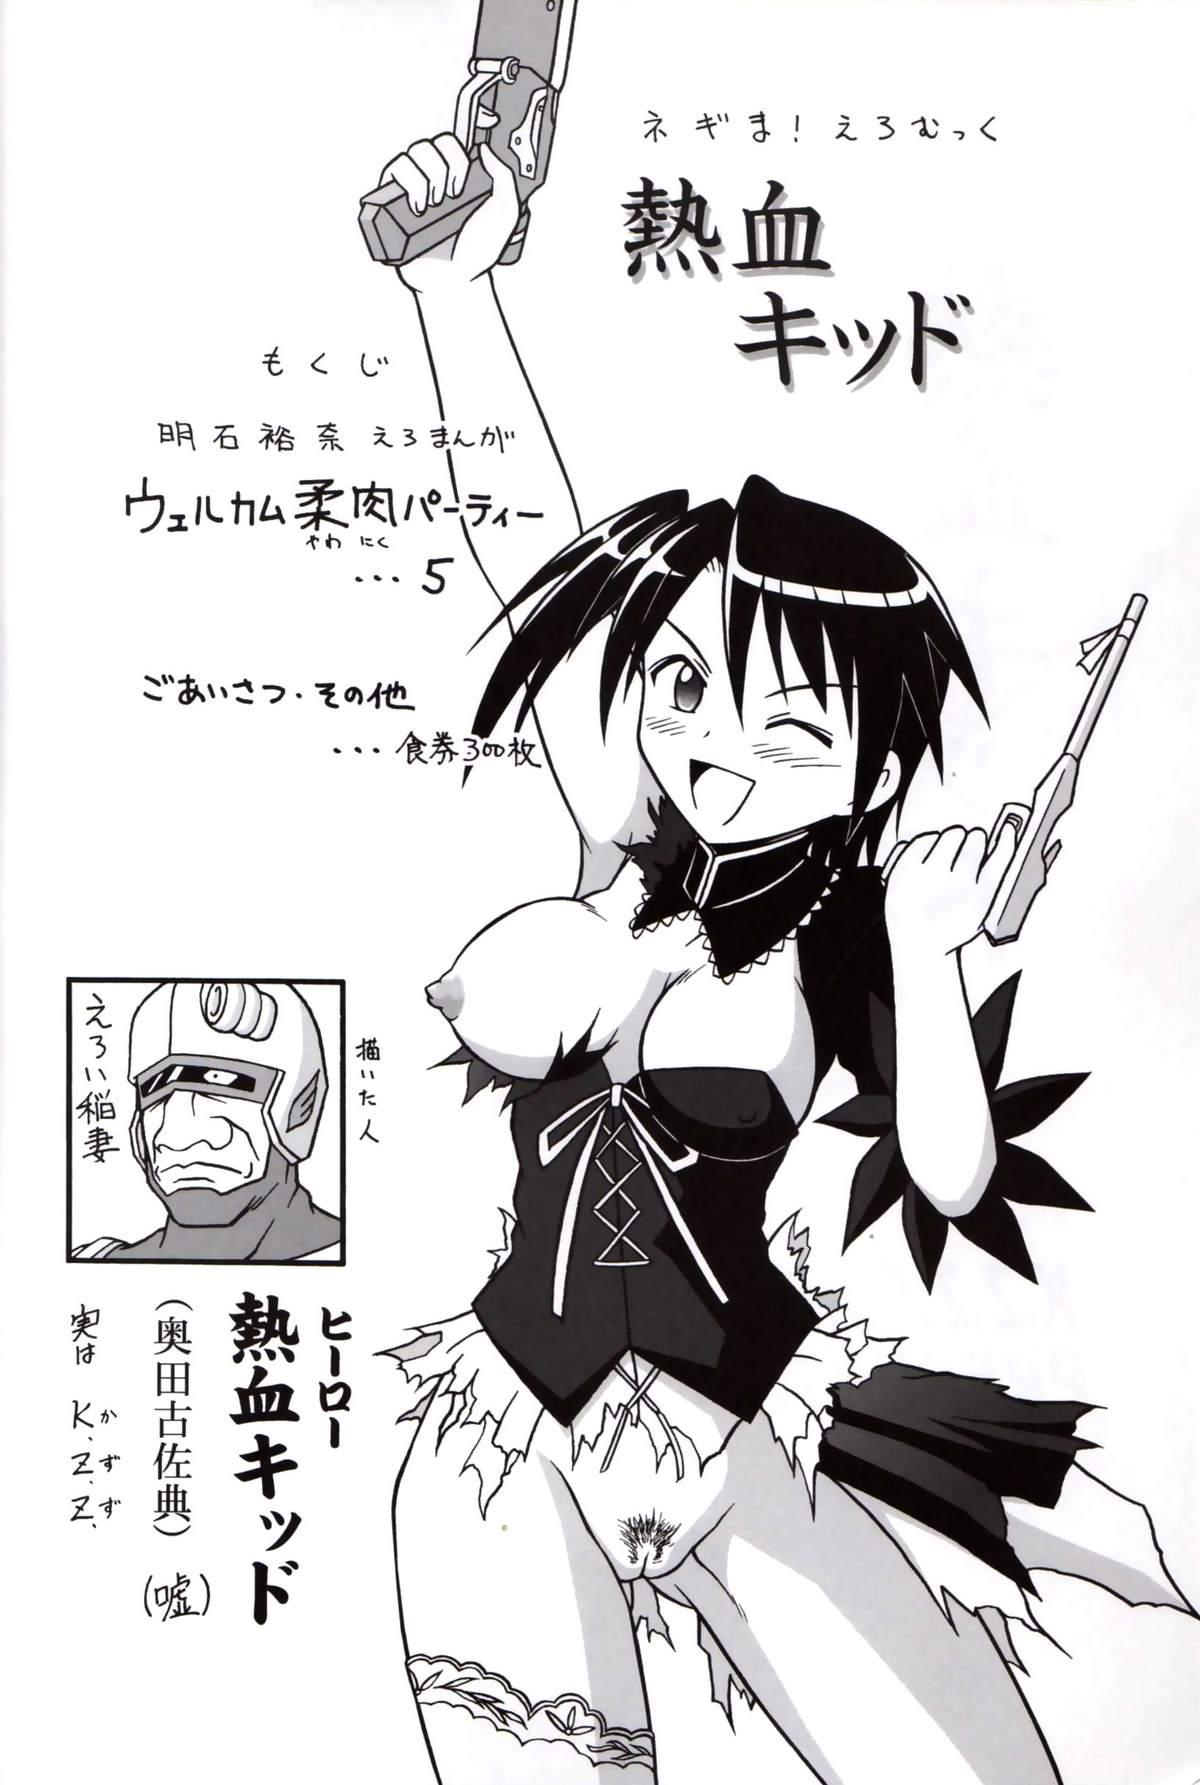 Whipping Nekketsu Kid - Mahou sensei negima Linda - Page 3